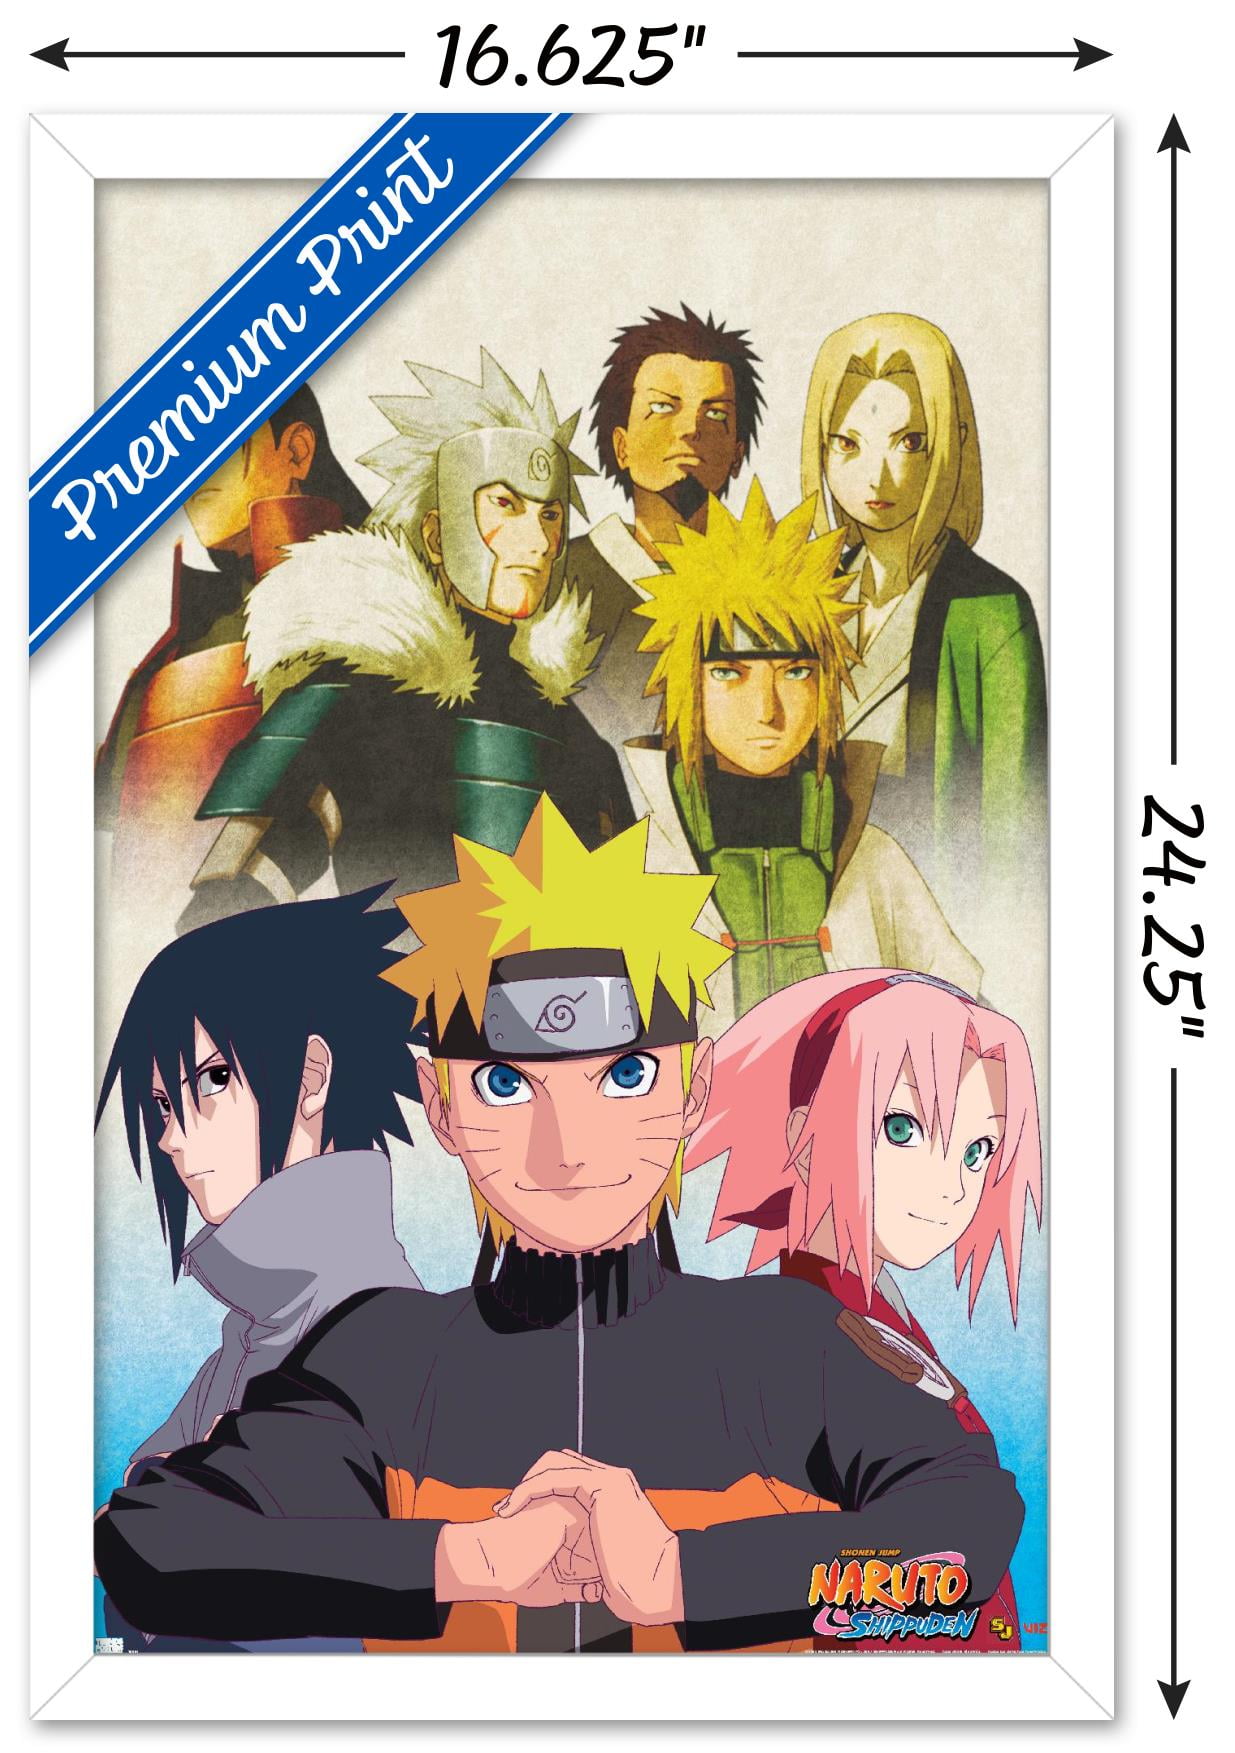 Boruto: Naruto Next Generations - Key Art Wall Poster, 22.375 x 34,  Framed 